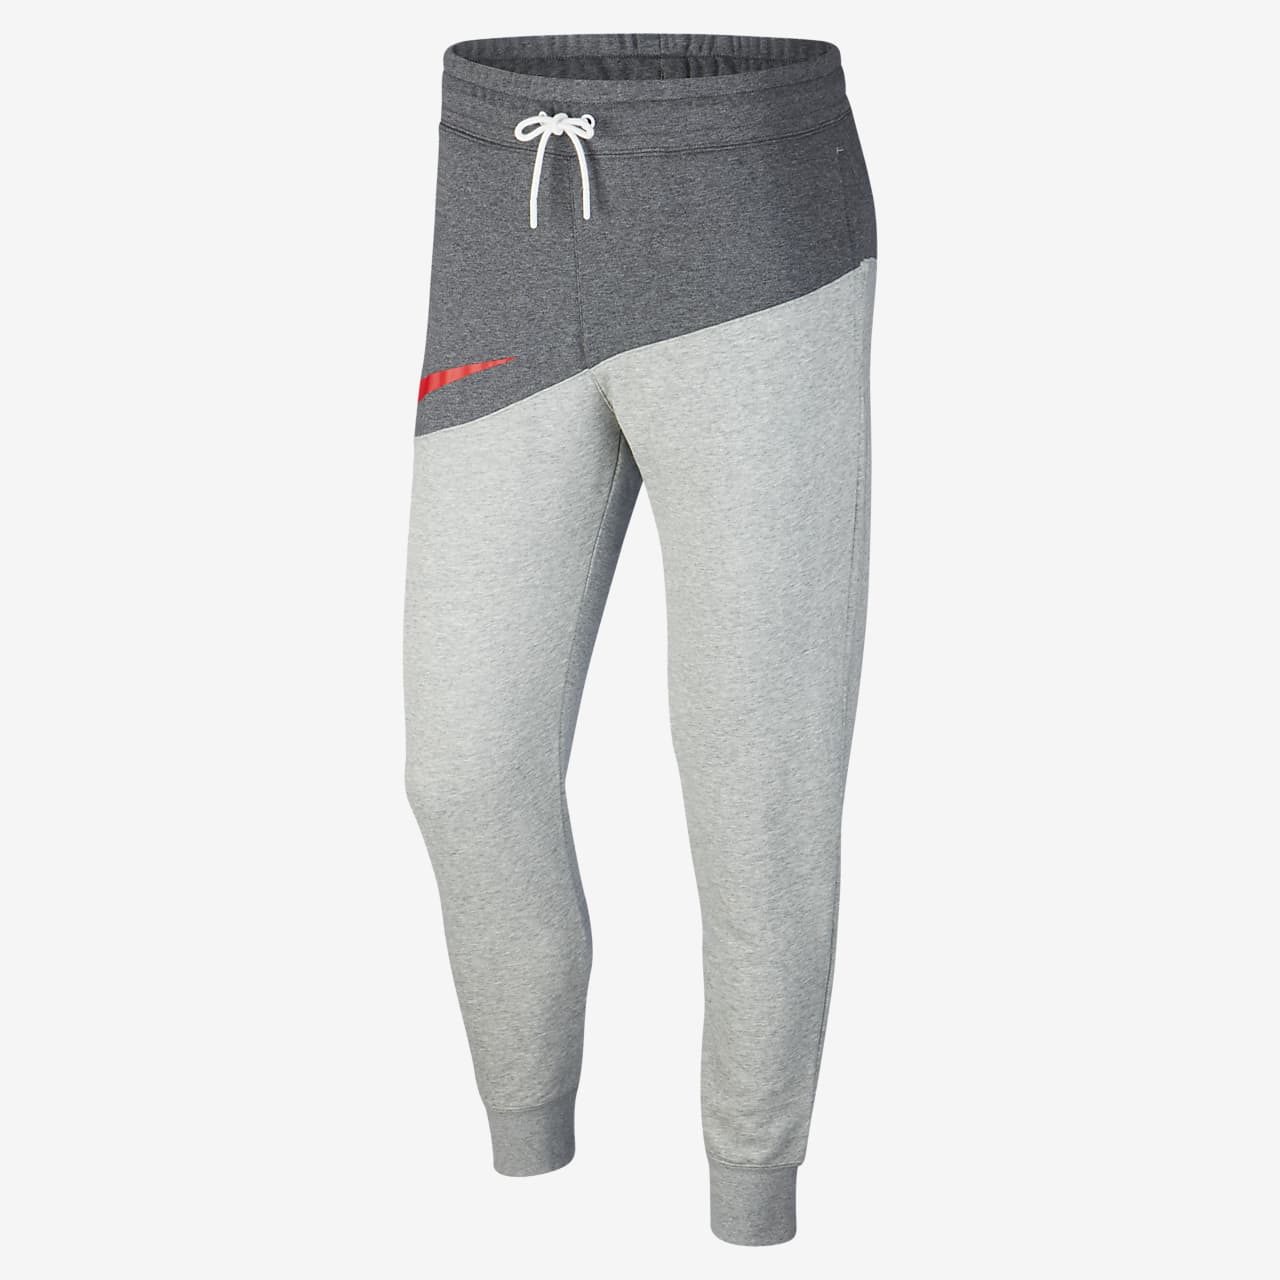 Nike Sportswear Men's Swoosh Trousers